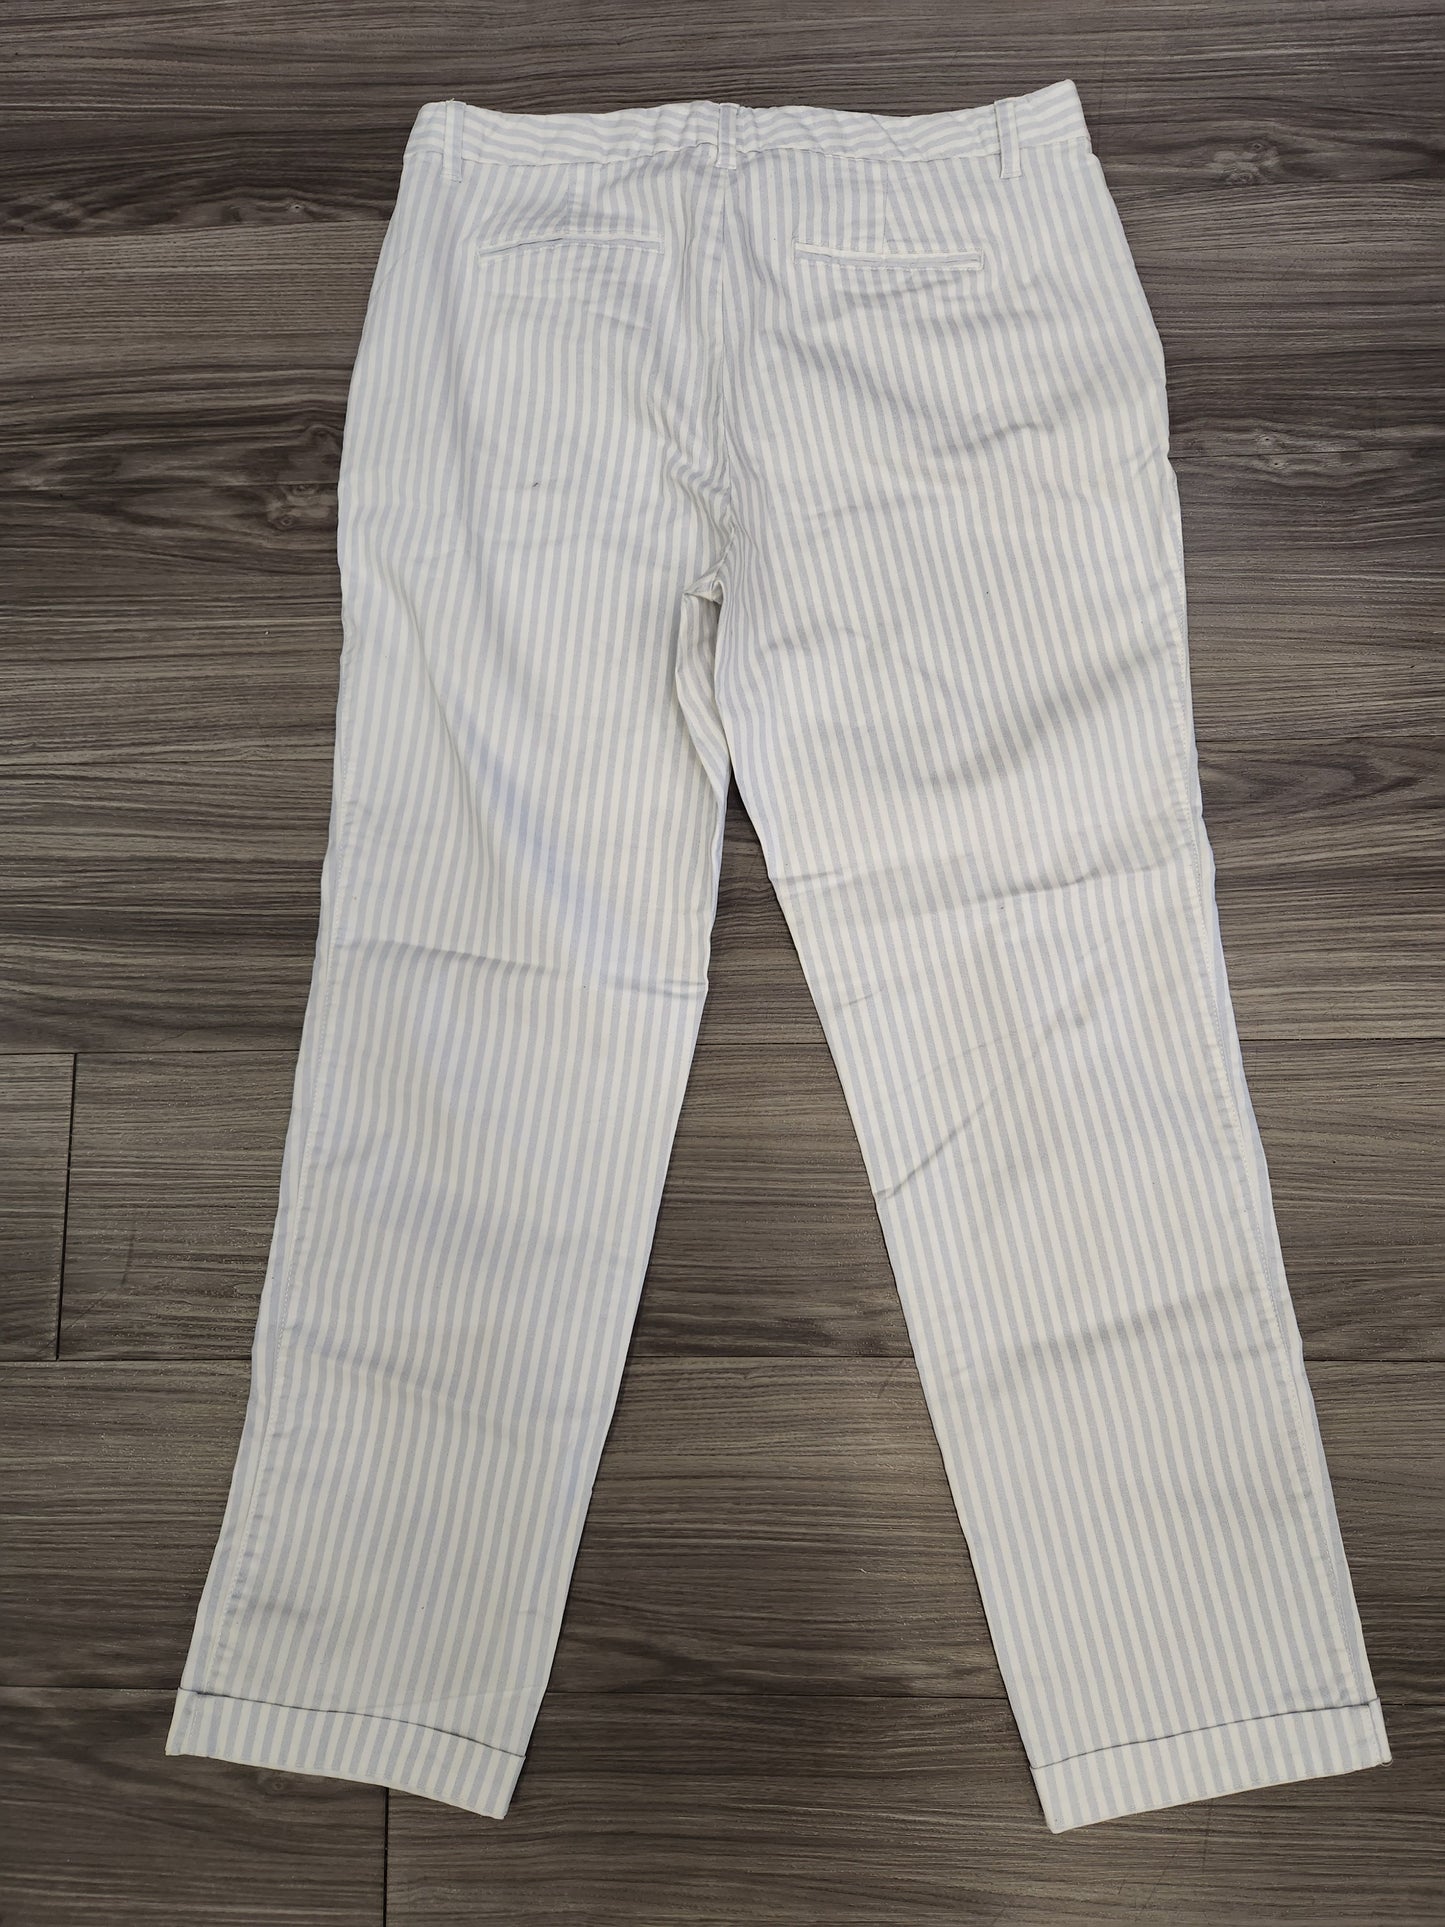 Pants Dress By Gap  Size: 10